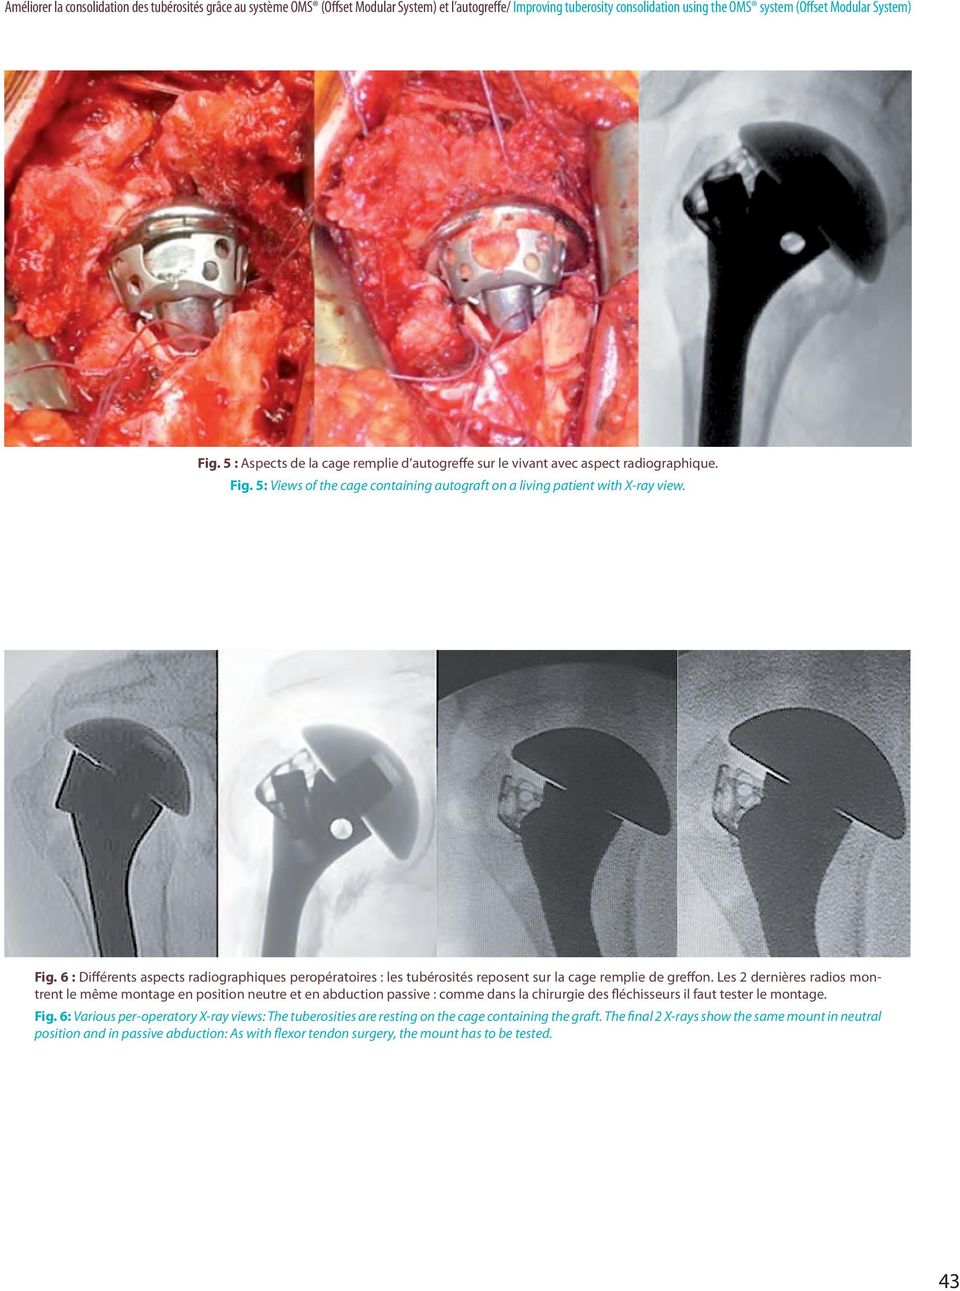 5: Views of the cage containing autograft on a living patient with X-ray view. Fig. 6 : Différents aspects radiographiques peropératoires : les tubérosités reposent sur la cage remplie de greffon.